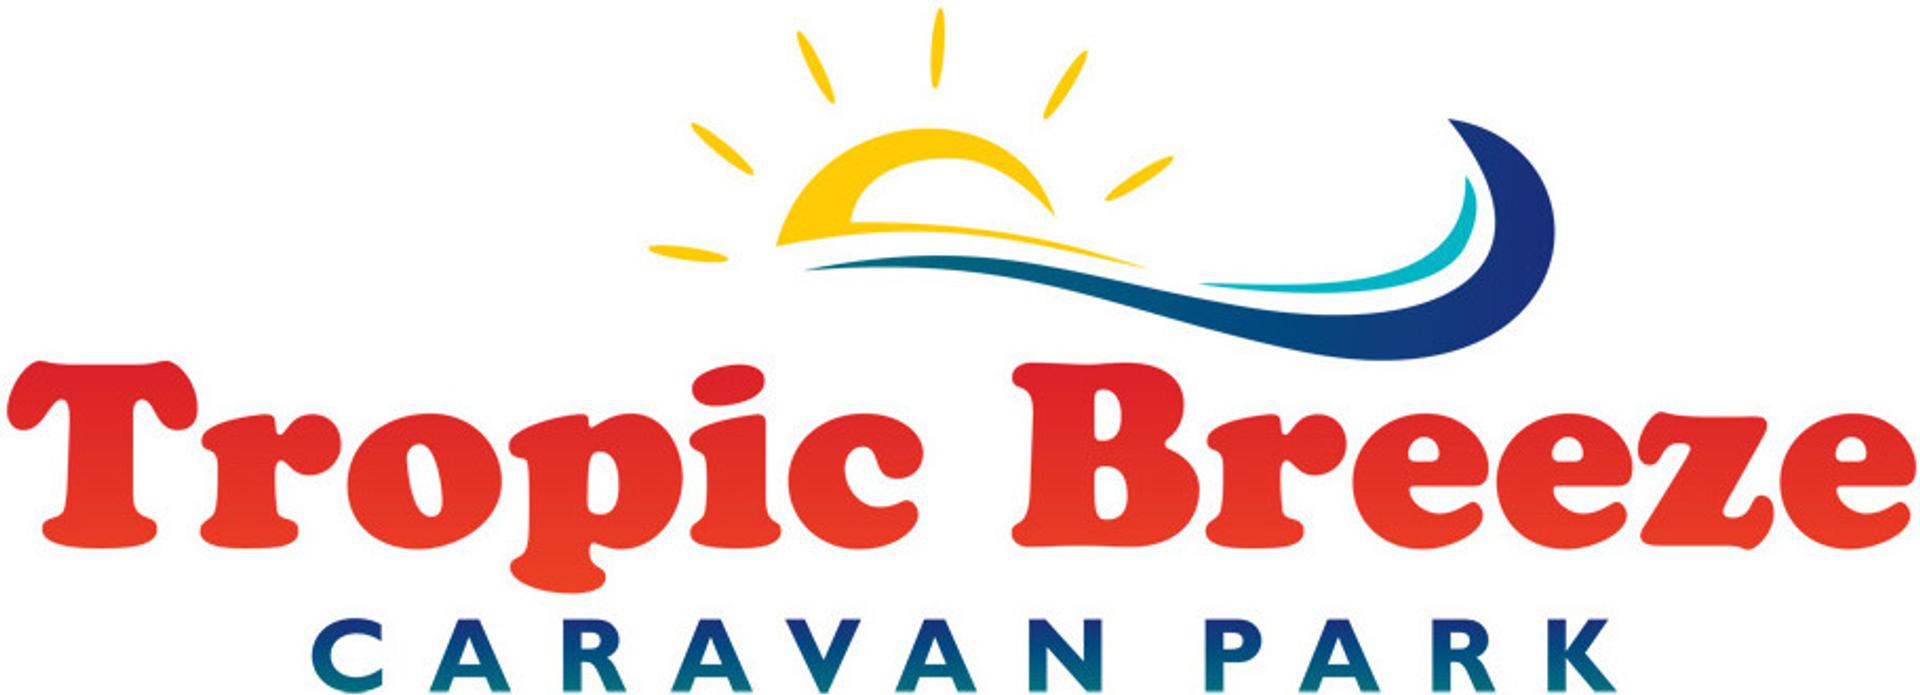 Tropic Breeze Caravan Park